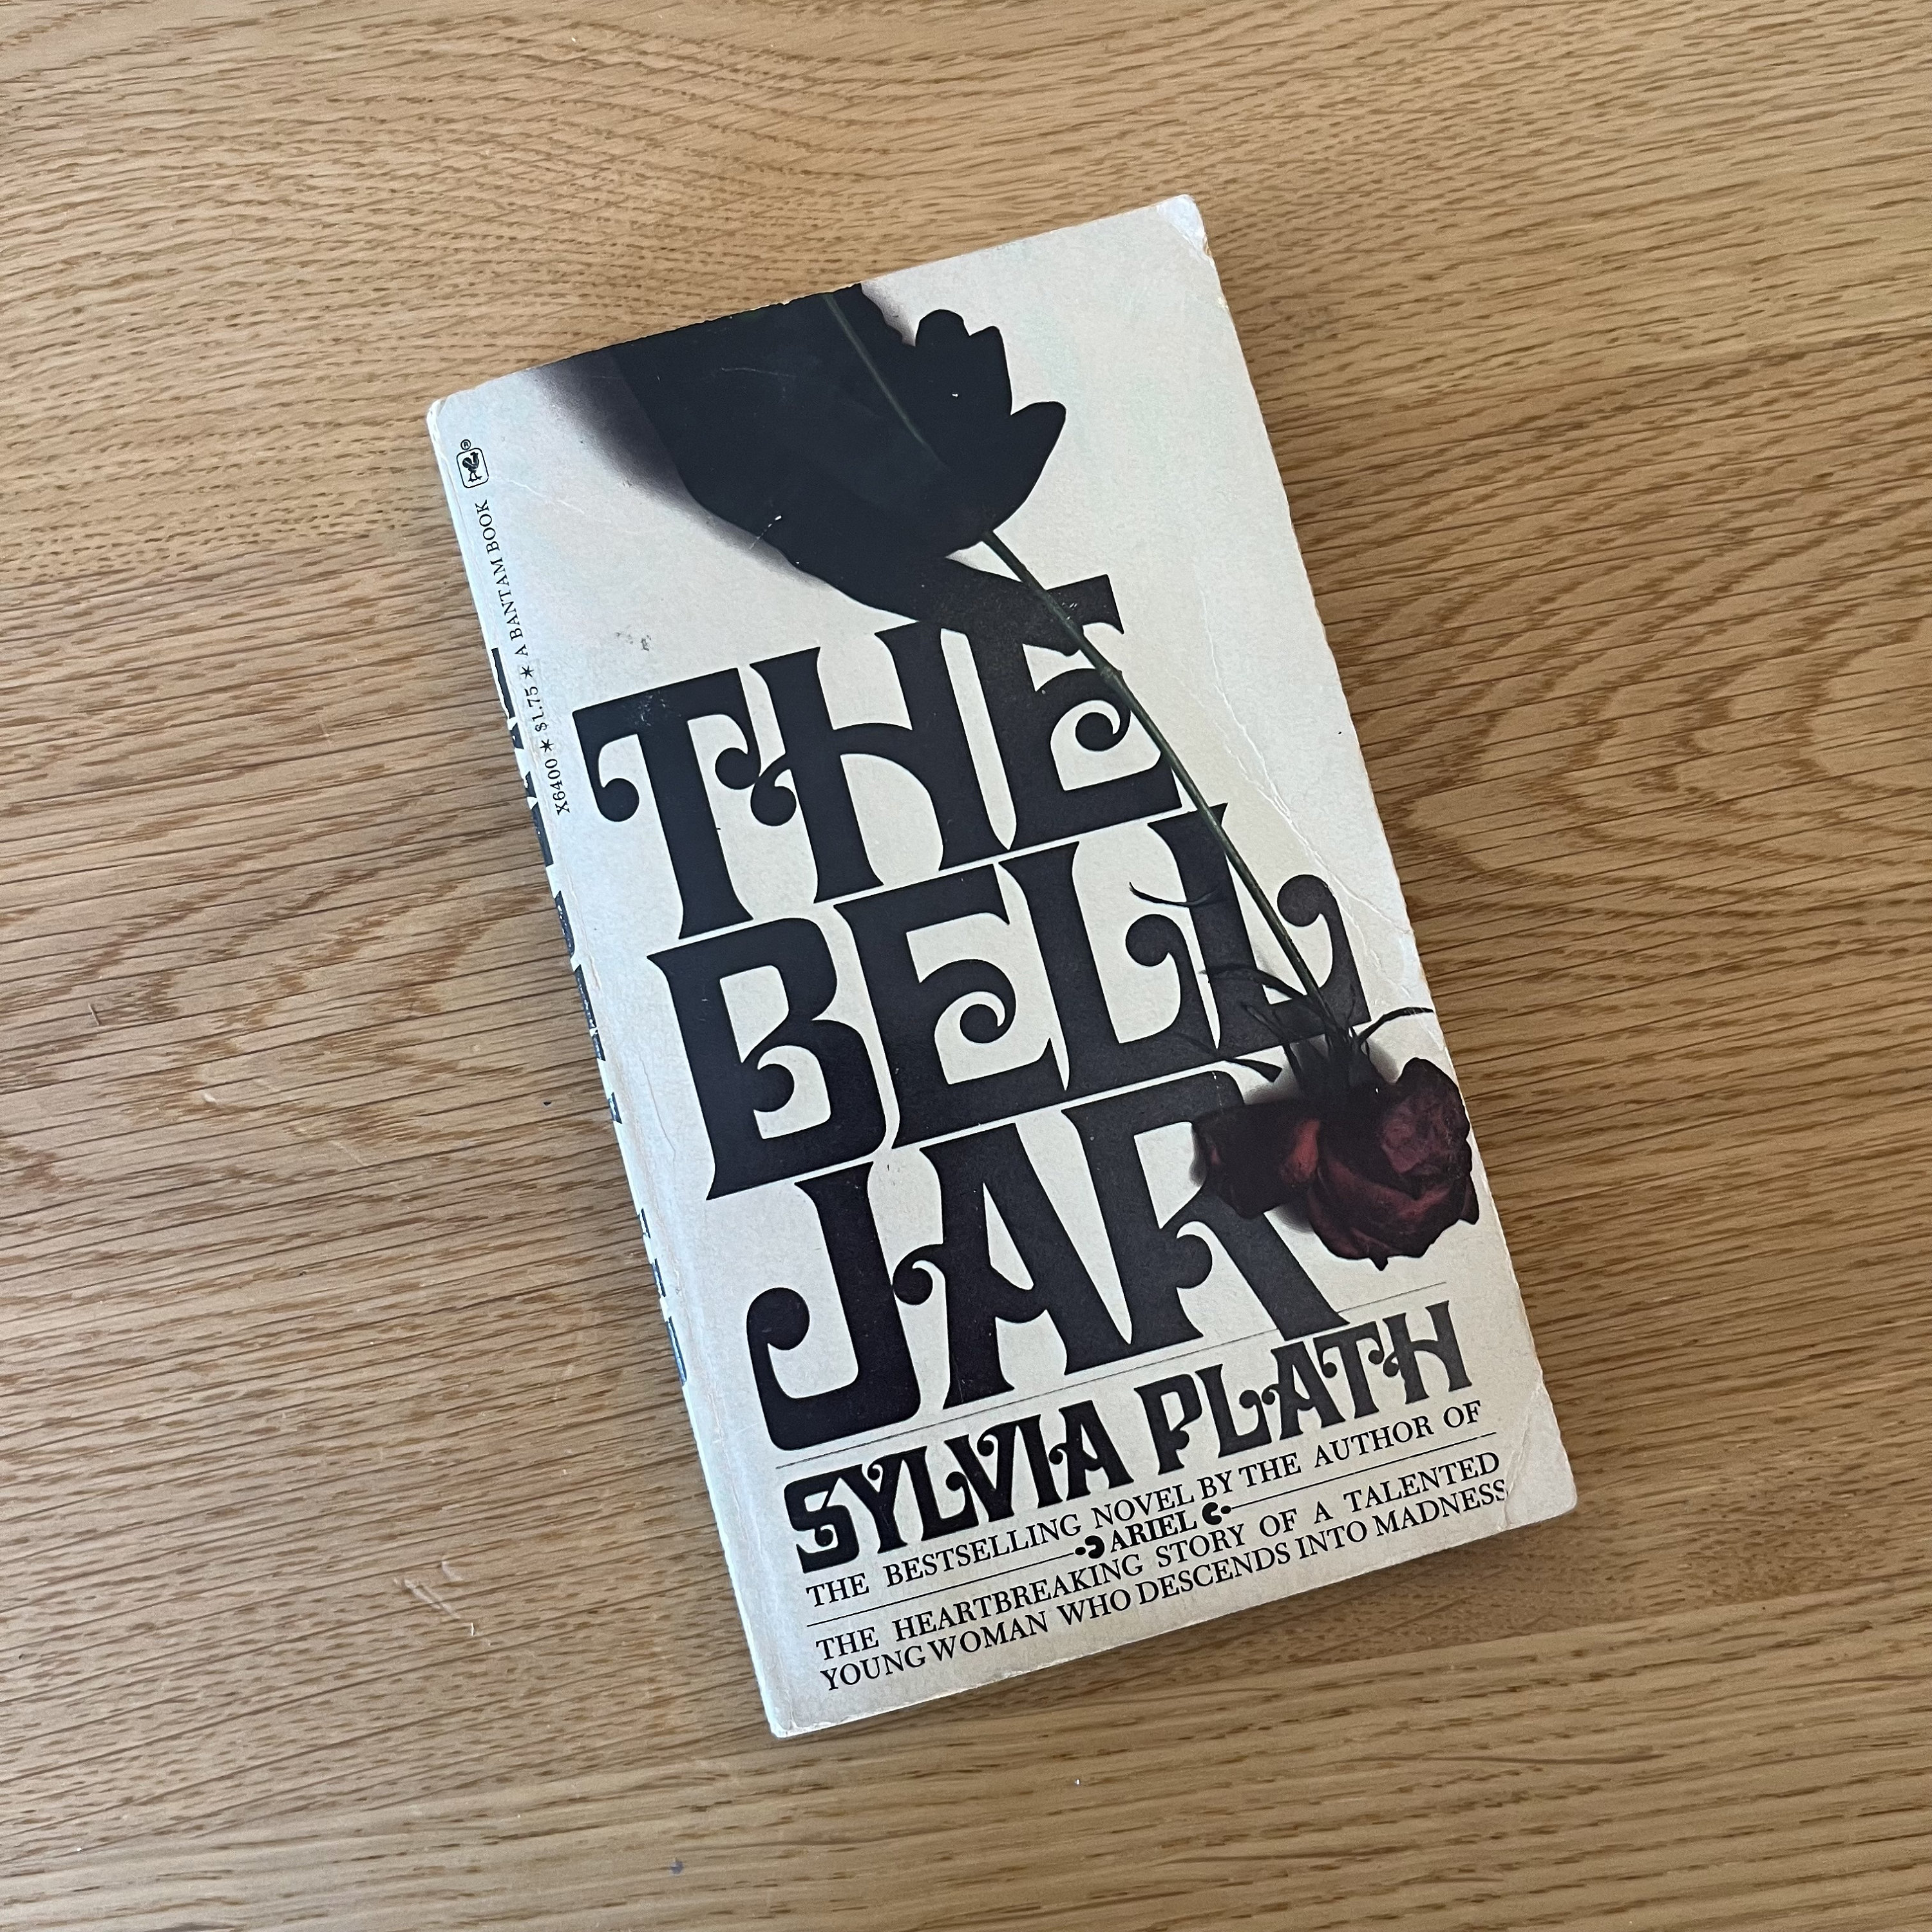 The Bell Jar eBook by Sylvia Plath - EPUB Book